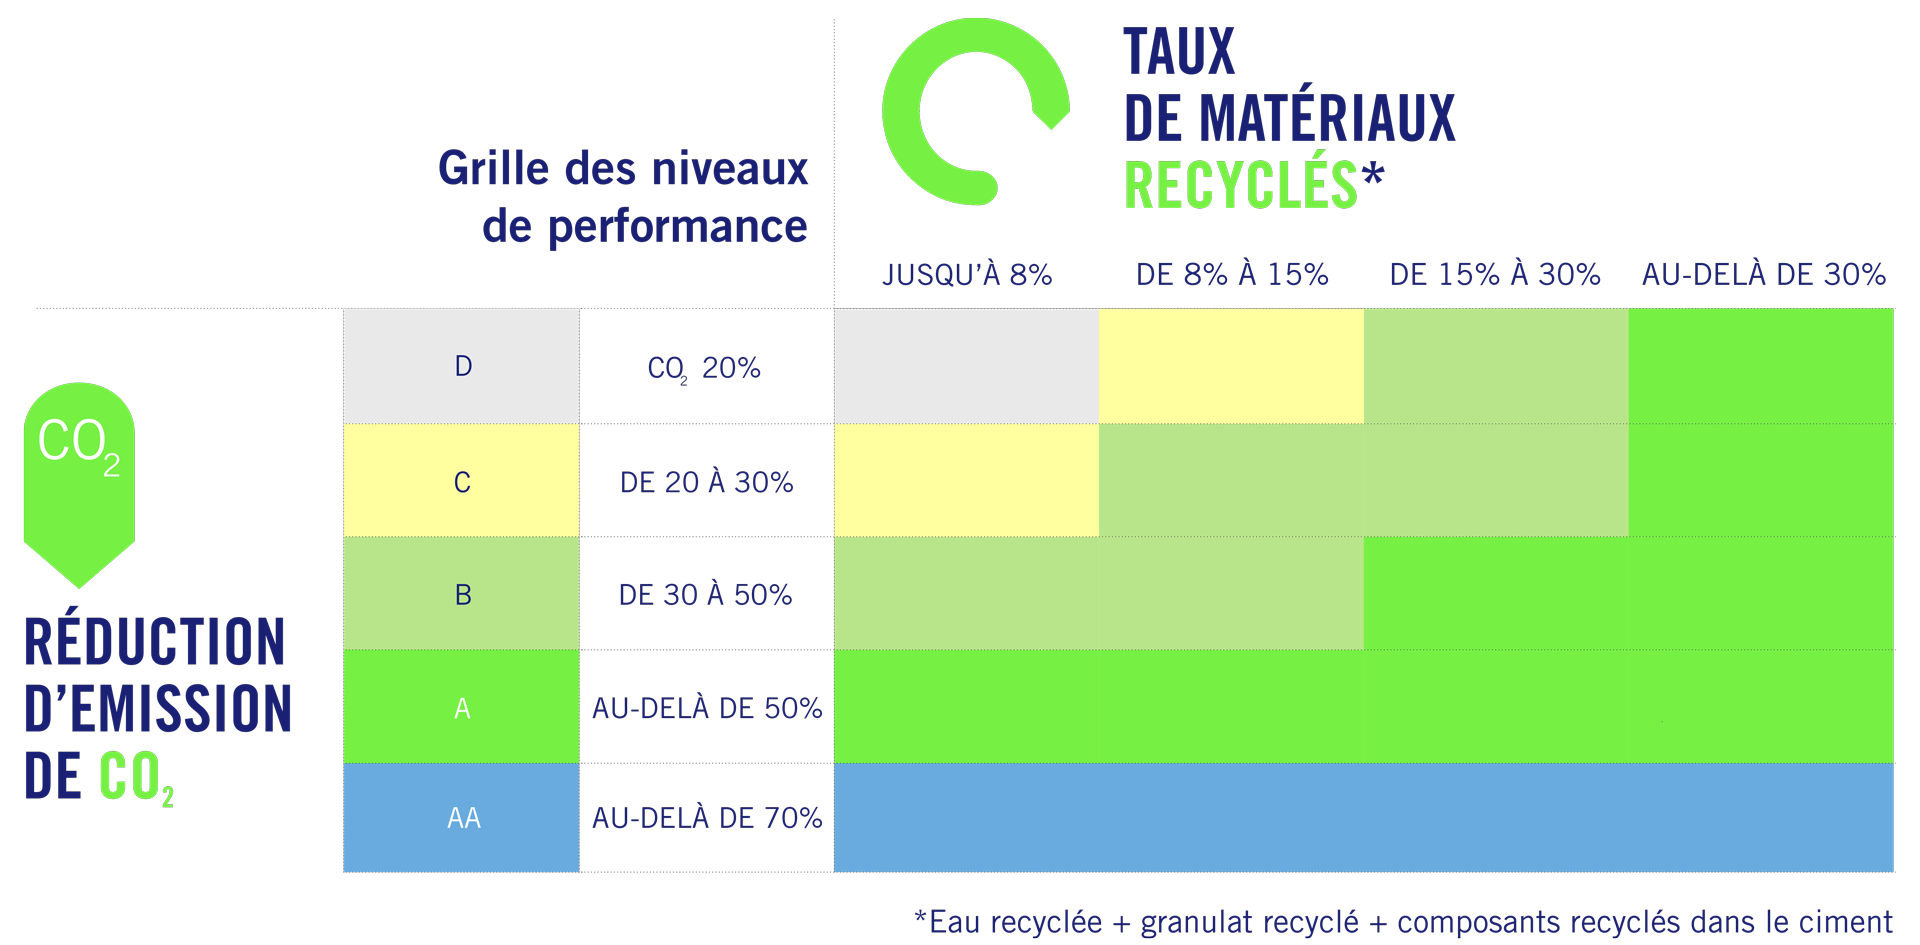 Tableau du taux de matériaux recyclés